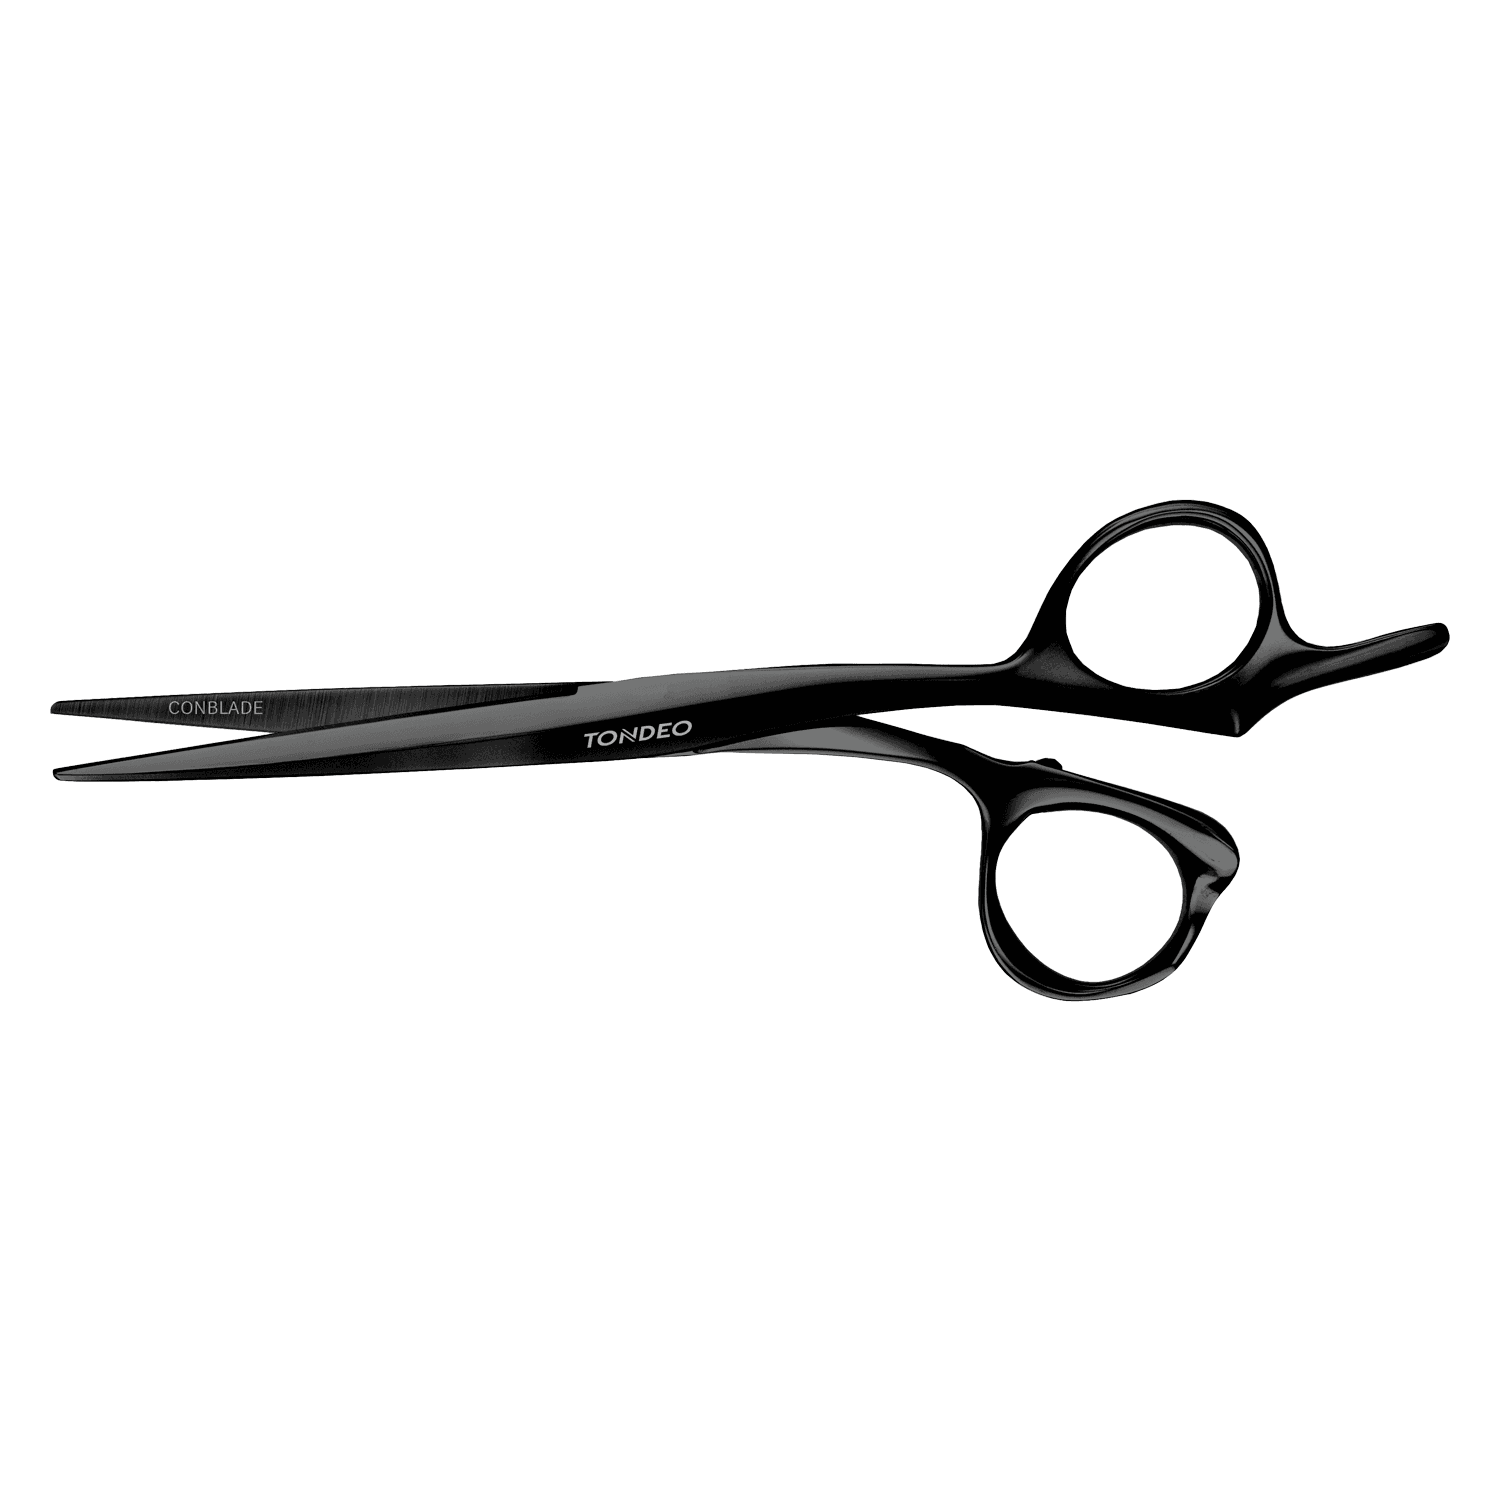 Tondeo Scissors - Zentao Black Offset Scissors 5.5" CONBLADE